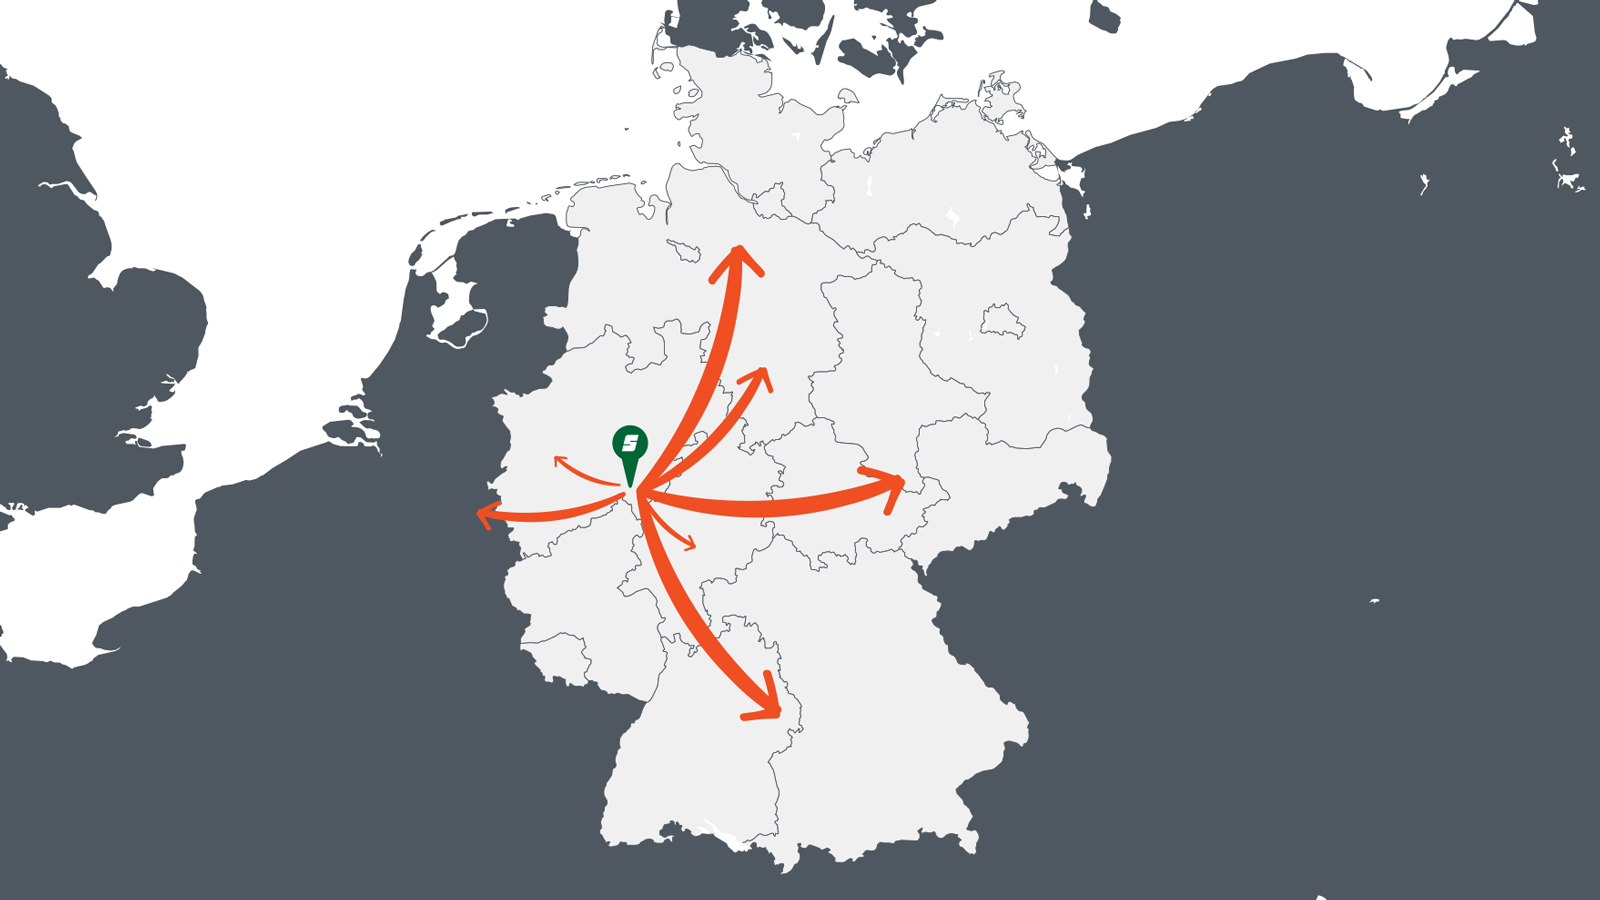 Wir beliefern das Rhein - Ruhr Gebiet, Hamburg - Bremen, Thüringen, Sachsen, das Rhein - Main Gebiet, Baden-Würtemberg und Bayern